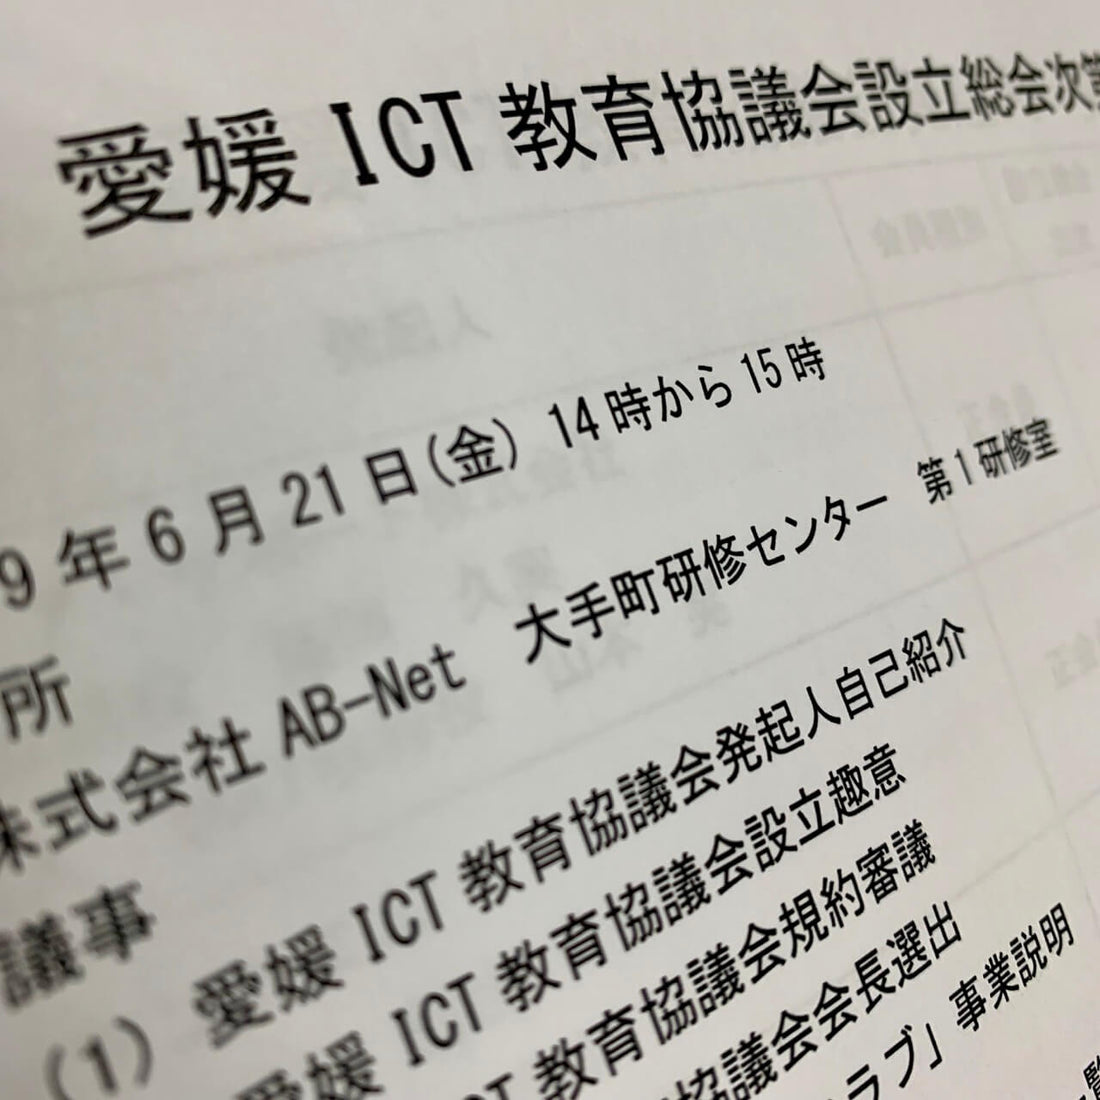 愛媛ICT教育協議会(EICTEC: Ehime ICT Education Council) 設立について